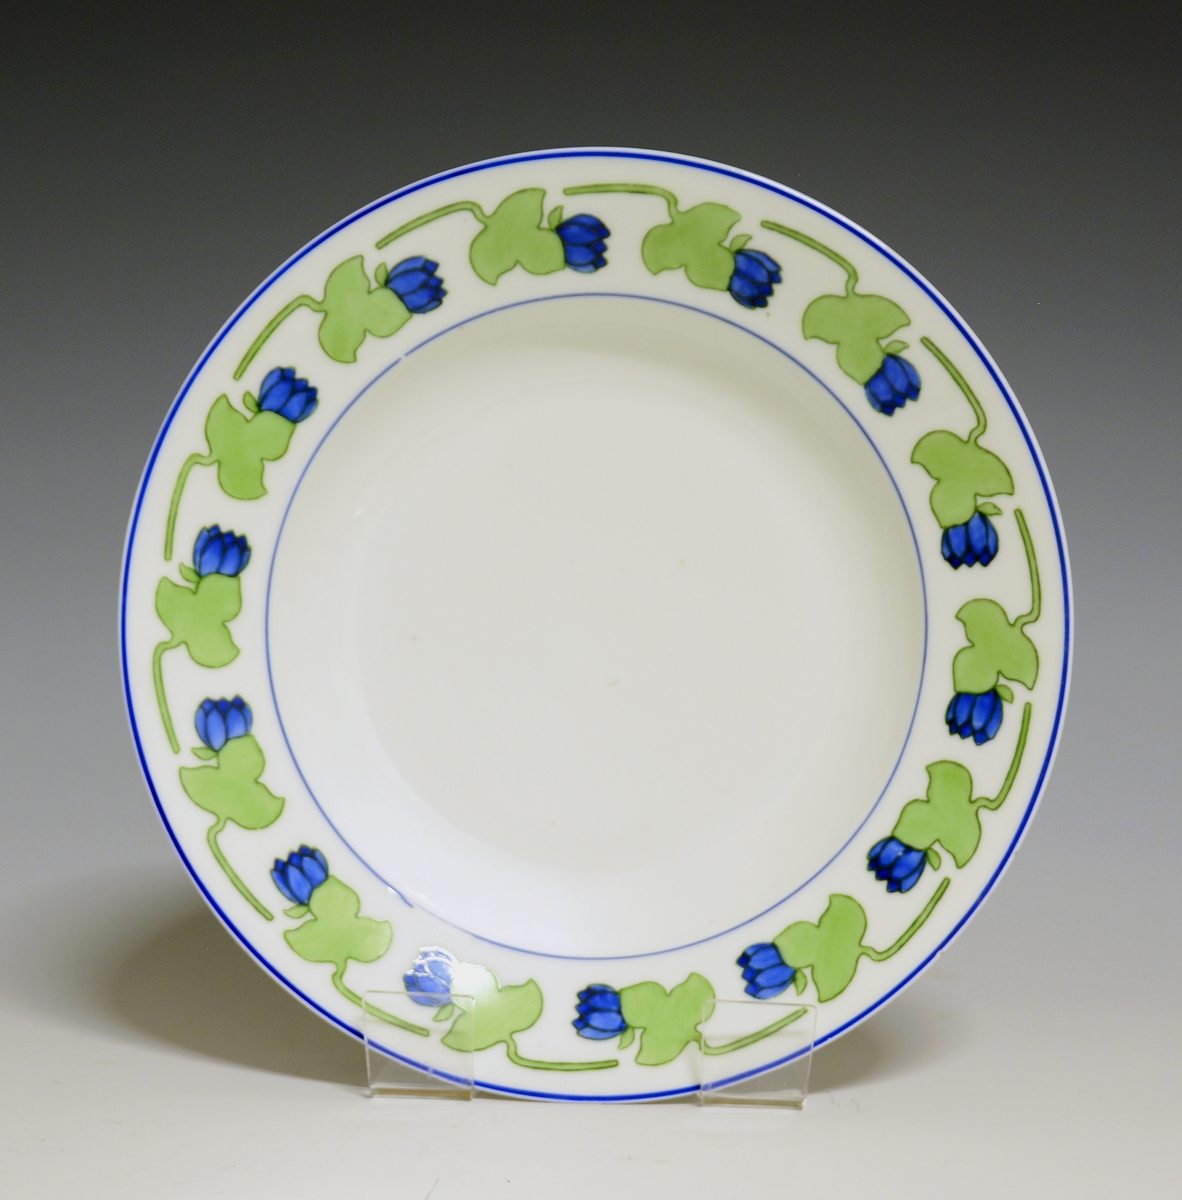 Dyp tallerken i porselen. Hvit glasur. Stilisert bord med blå blomst og grønt blad rundt  fanen.
Modellnr: 15.2
